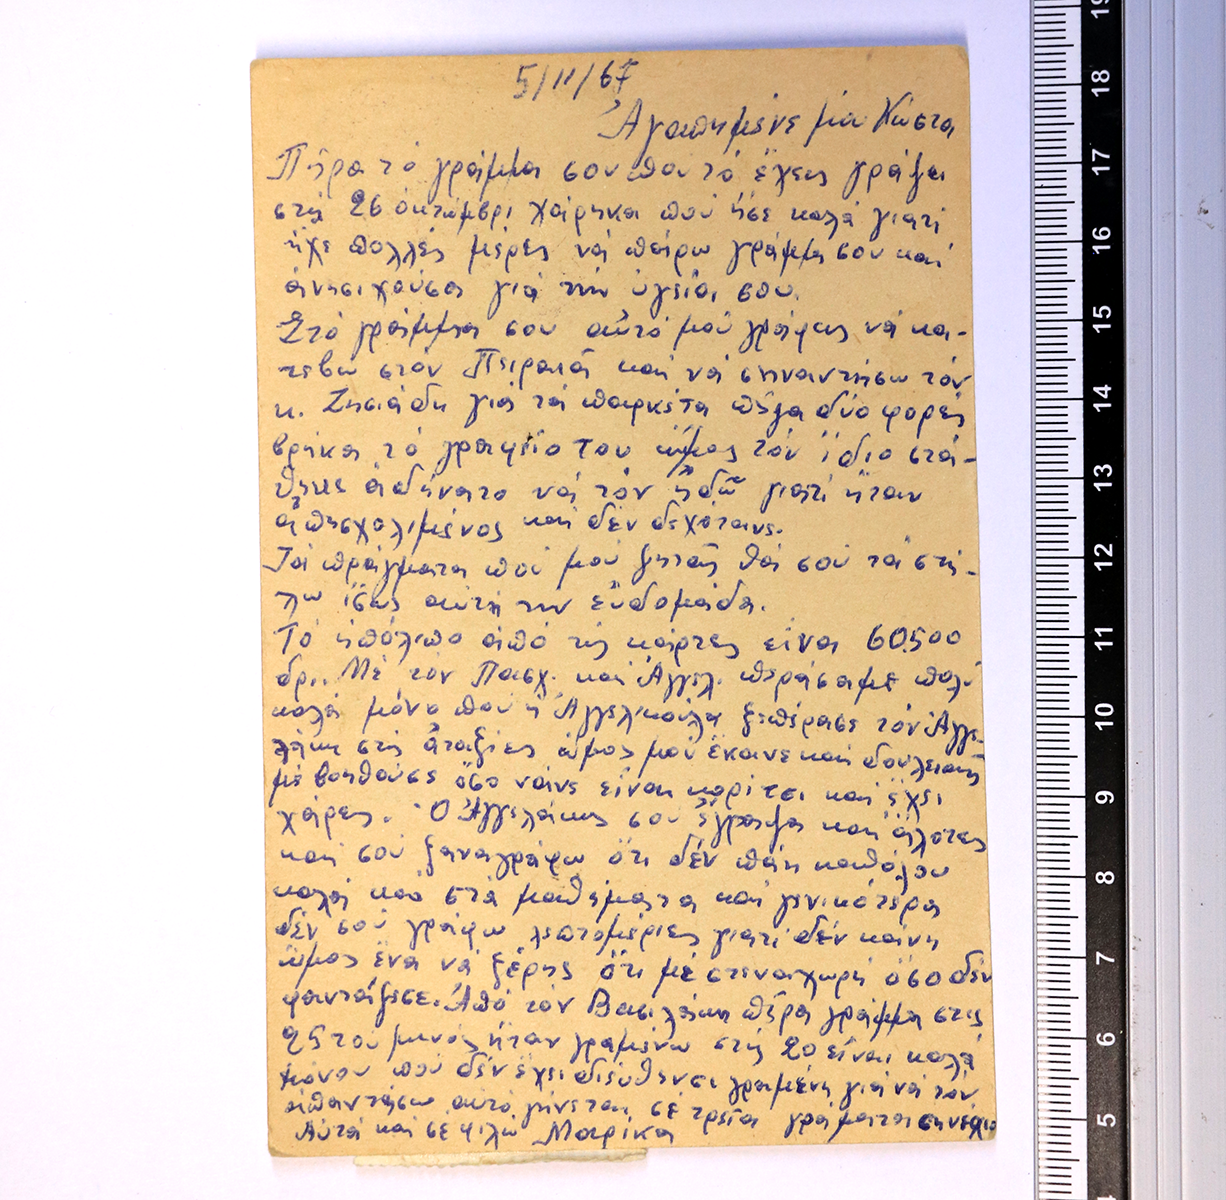 15. Το κείμενο του επιστολαρίου, όπου ο Κ. Γκόγκογλου ζητά μία συγκεκριμένη ξυριστική μηχανή και παραθέτει και πρόχειρο σχεδιάγραμμα για σιγουριά, 5-11-1967